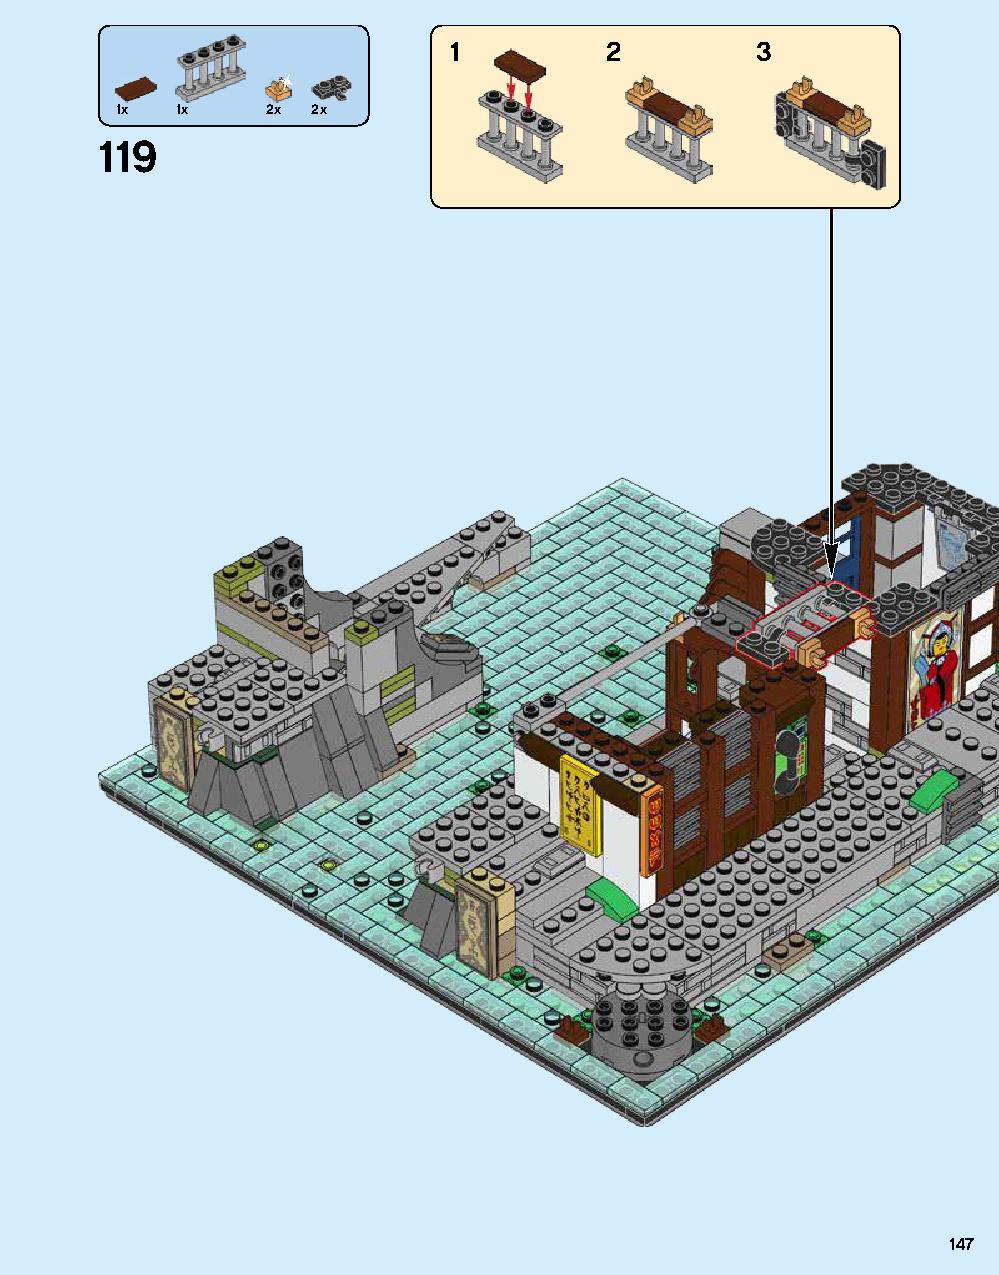 ニンジャゴー シティ 70620 レゴの商品情報 レゴの説明書・組立方法 147 page